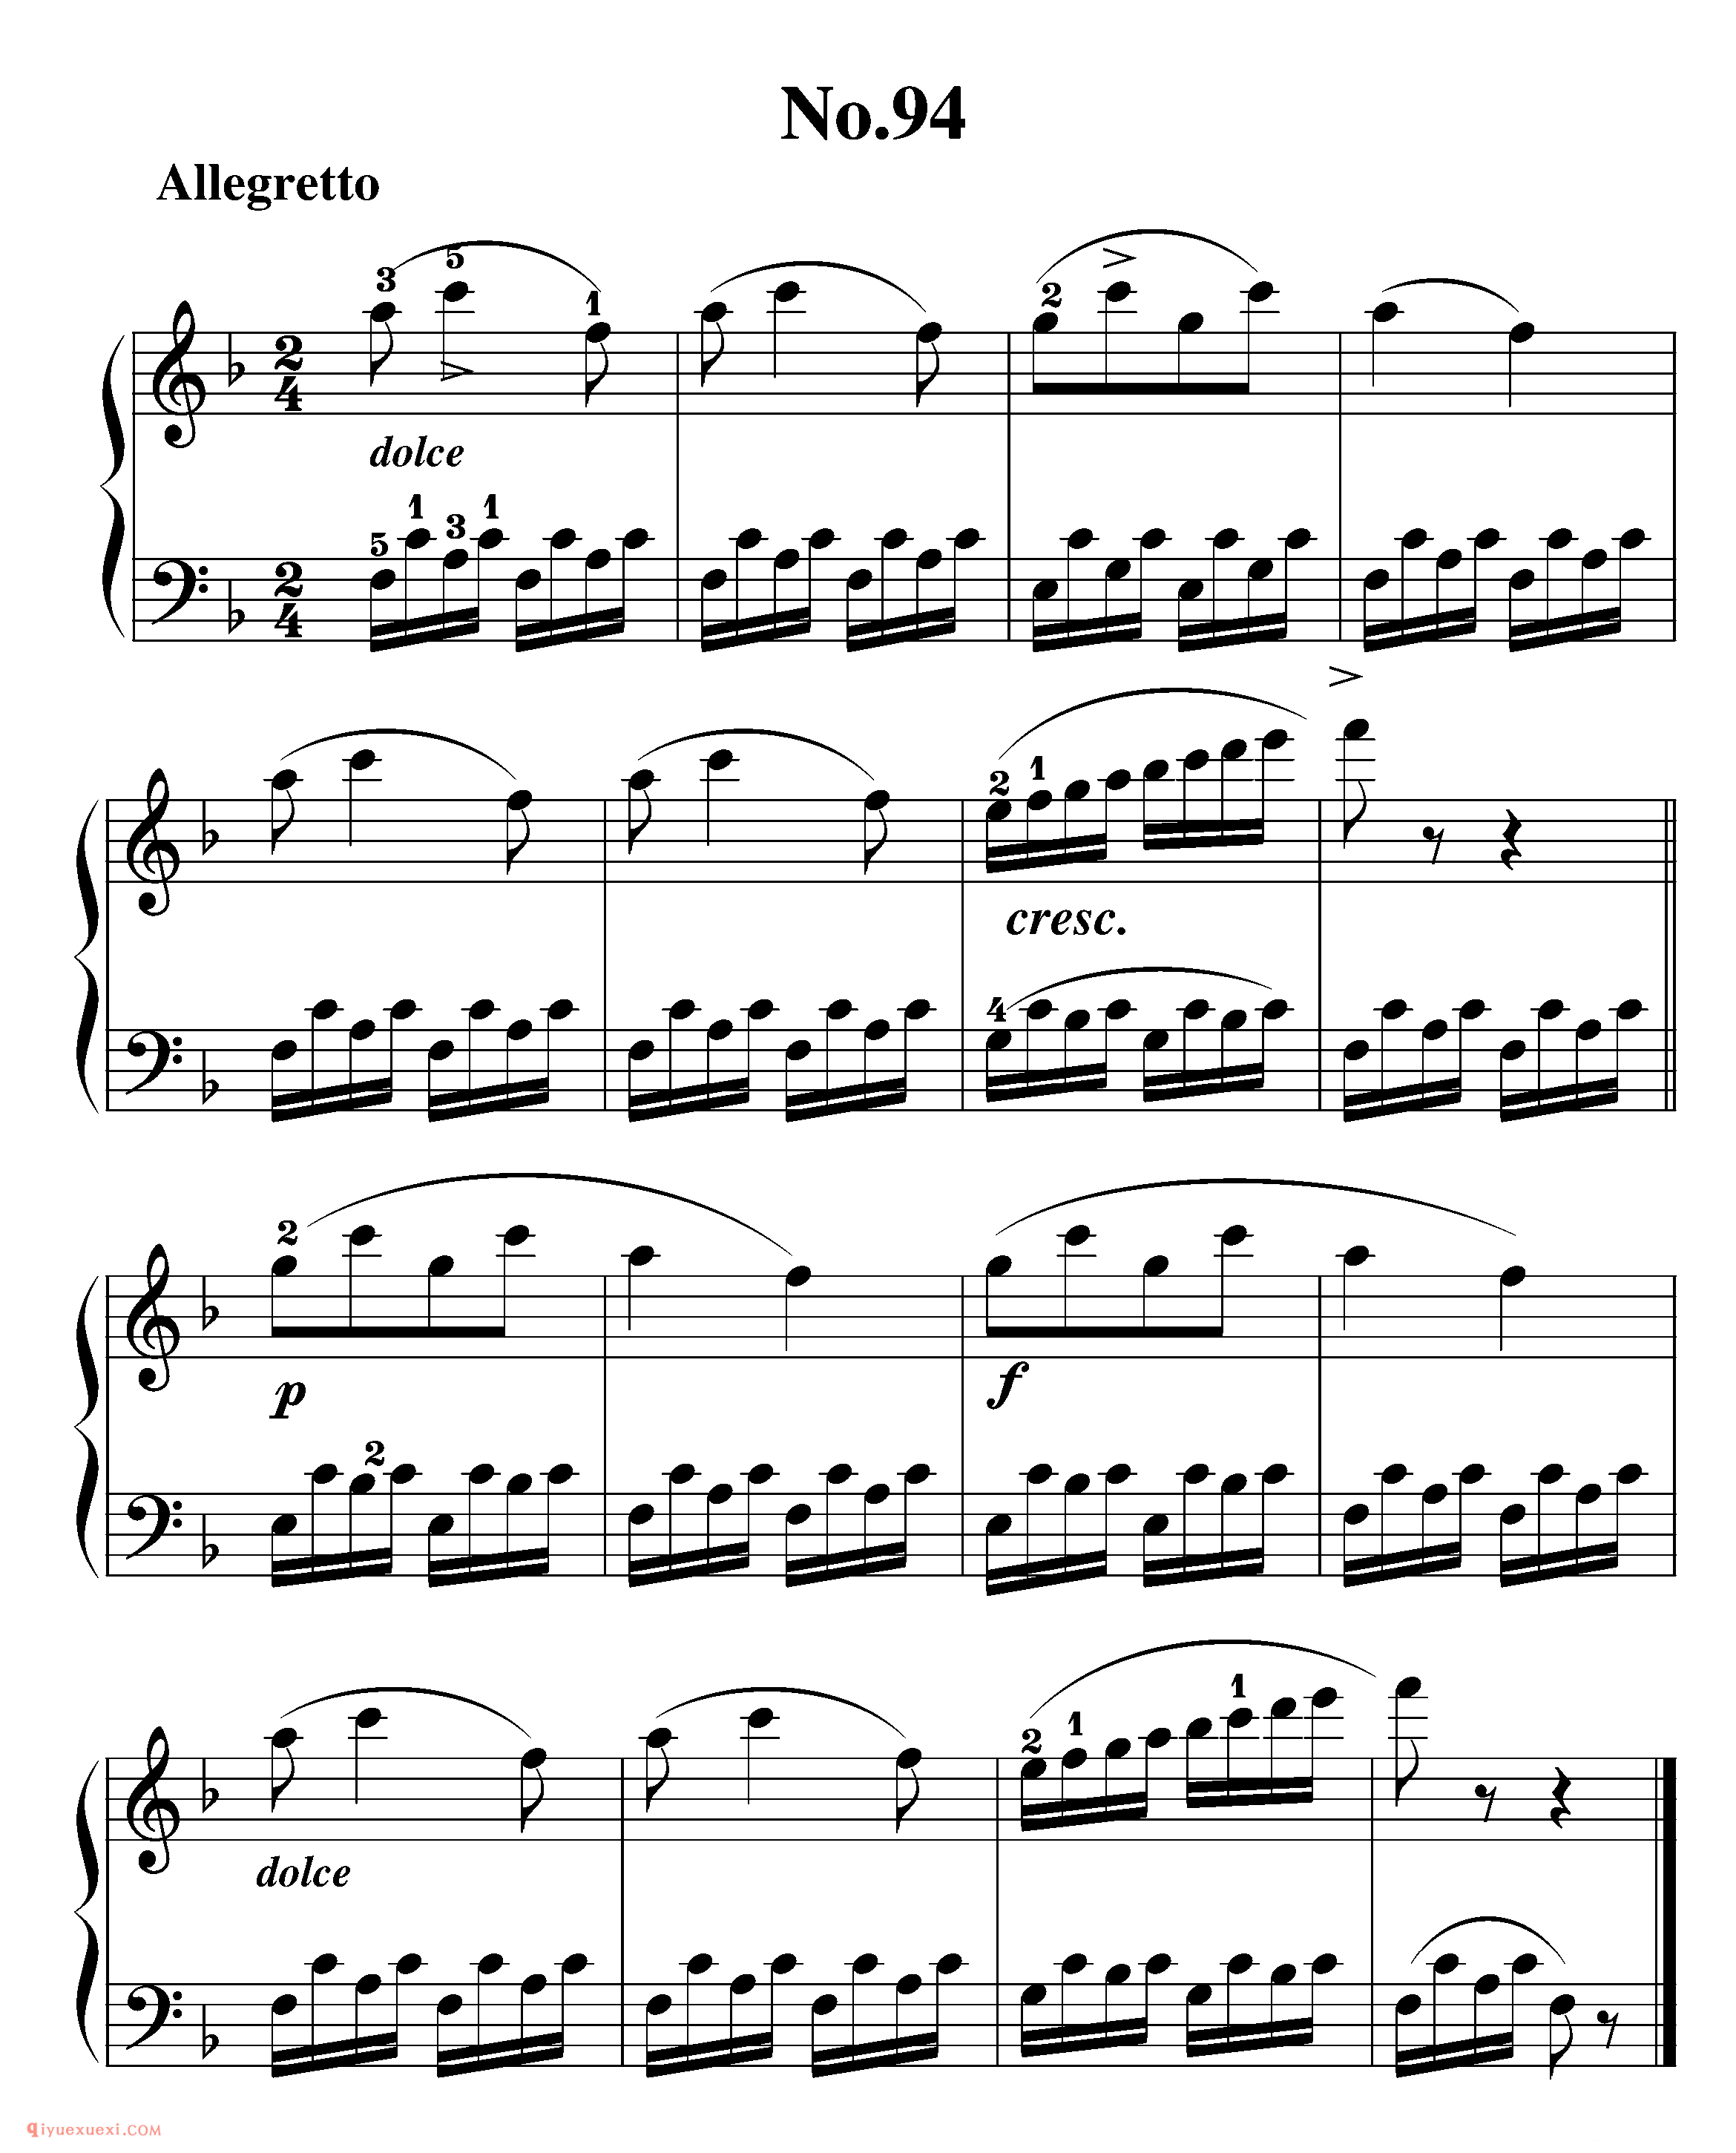 拜厄钢琴练习曲NO.94_拜尔(拜厄)钢琴基本教程练习曲第94首_五线谱